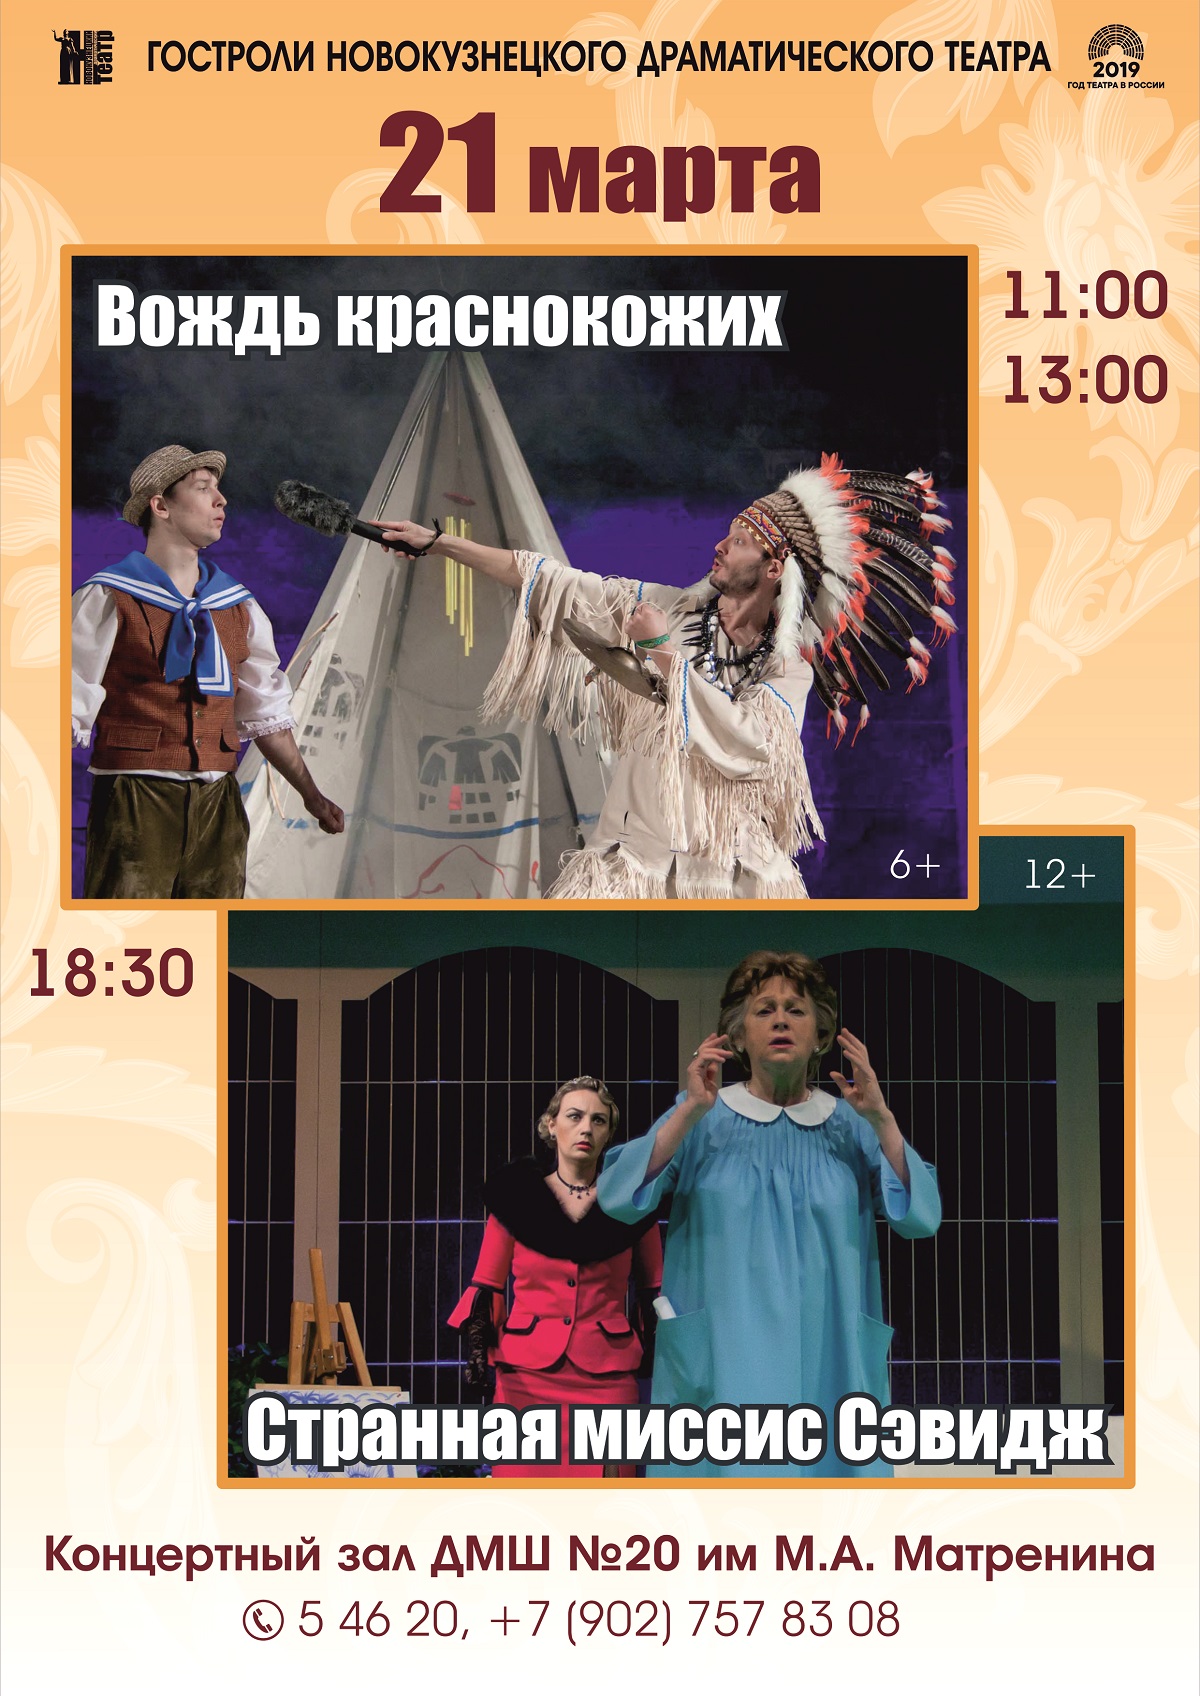 21 марта гастроли Новокузнецкого драматического театра